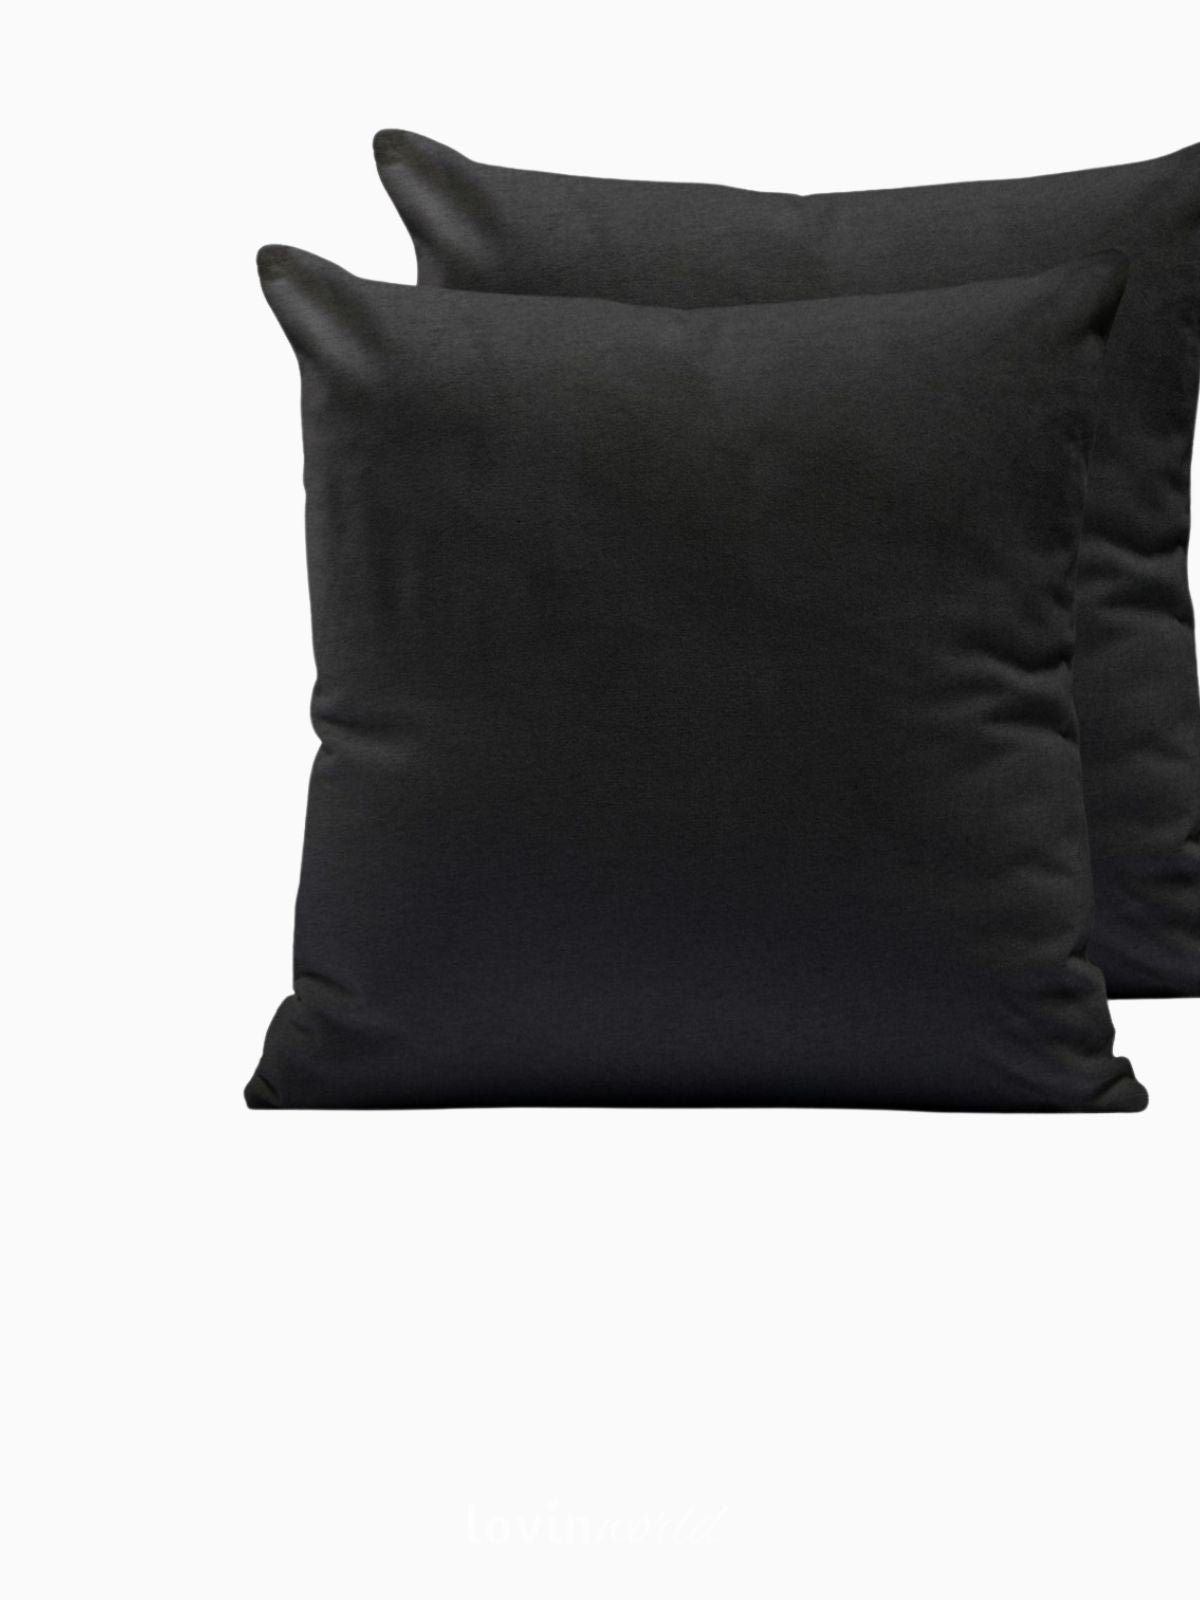 2 Federe per cuscino Amber in colore nero 50x50 cm.-2